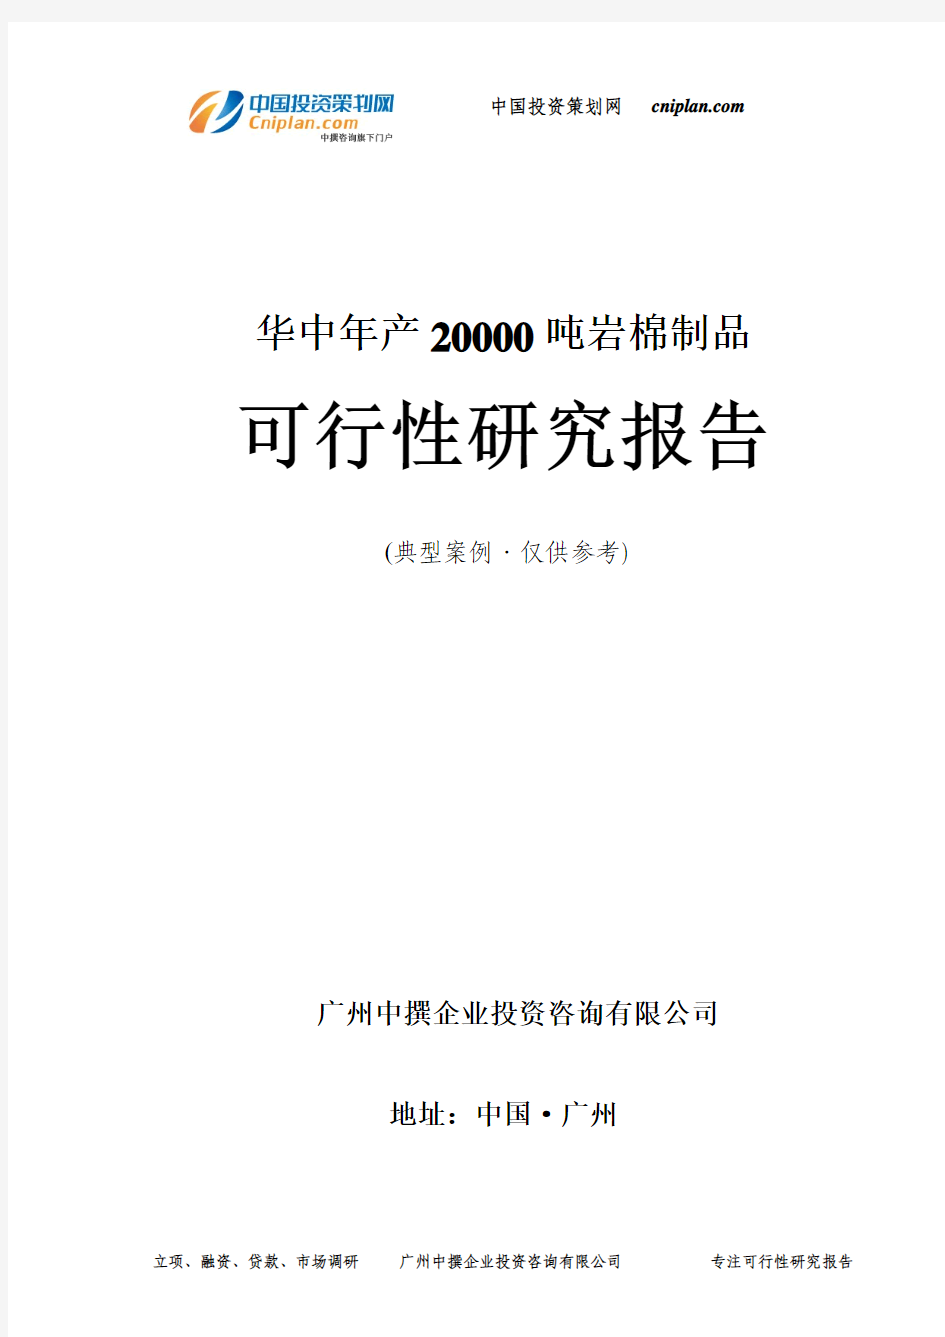 华中年产20000吨岩棉制品可行性研究报告-广州中撰咨询